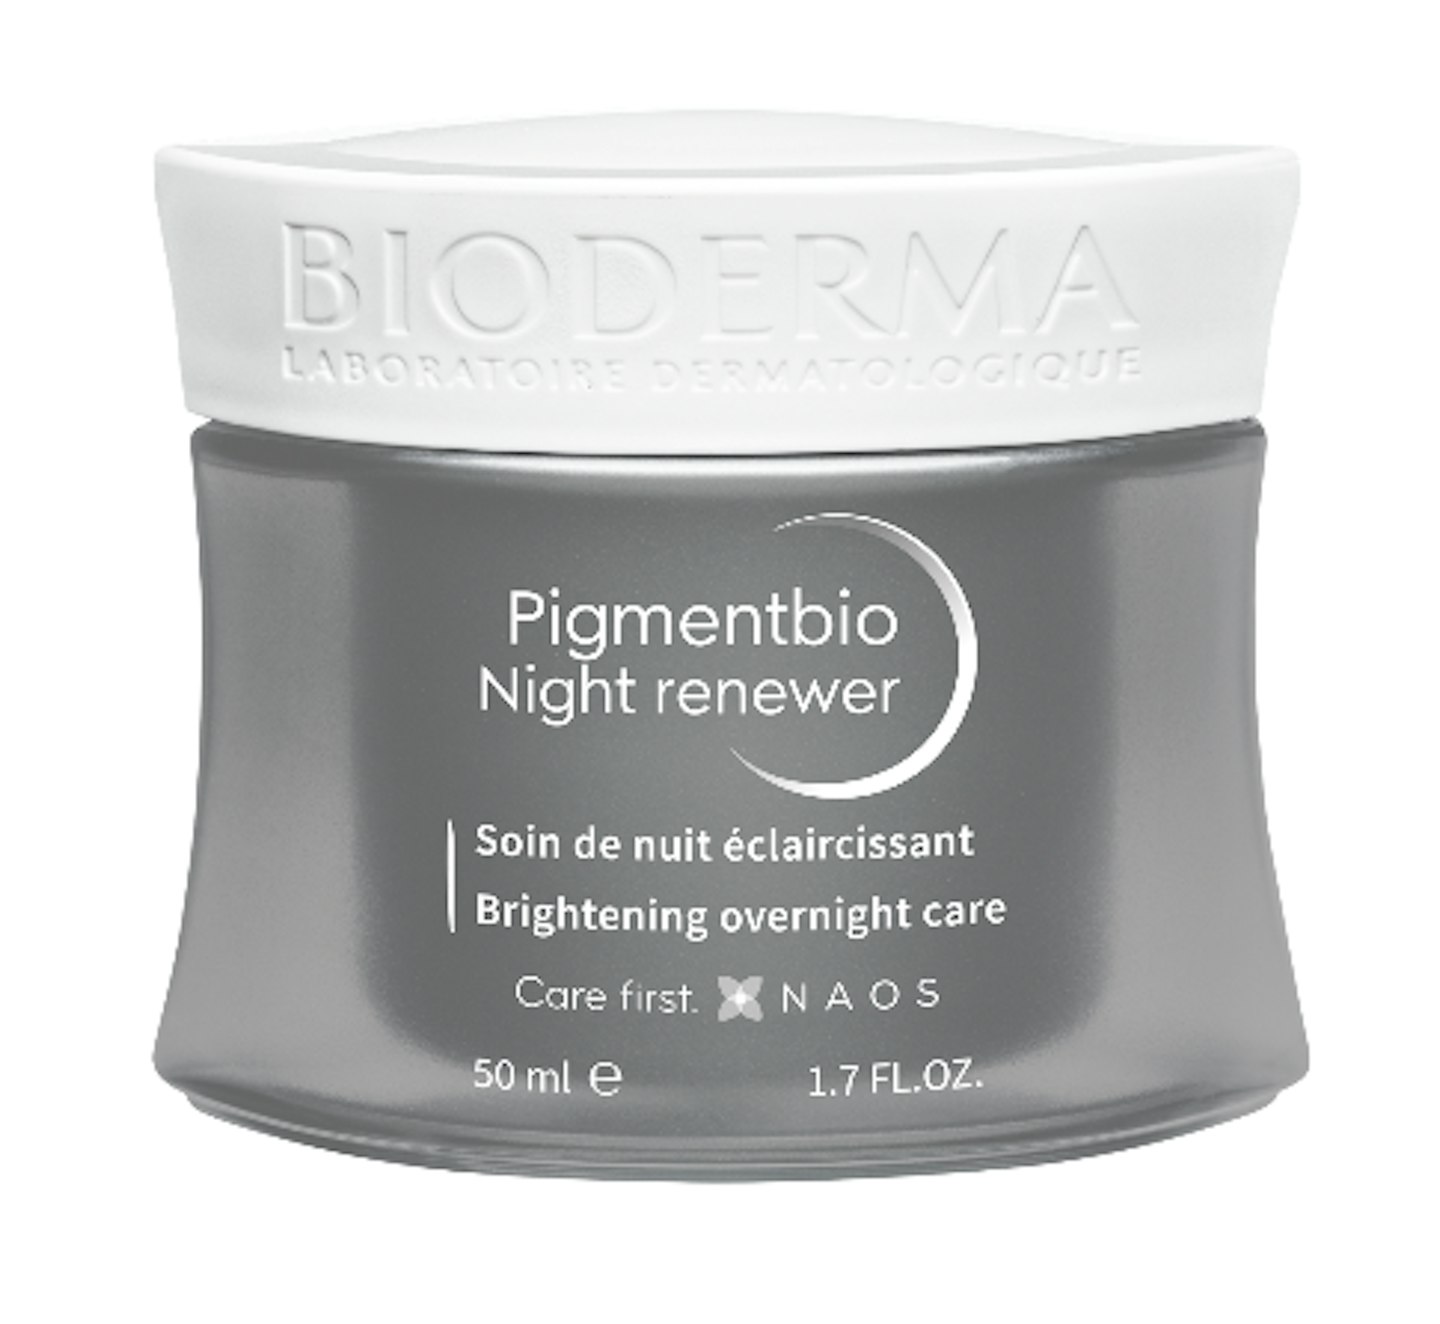 Bioderma Pigmentbio Night Renewer, £20